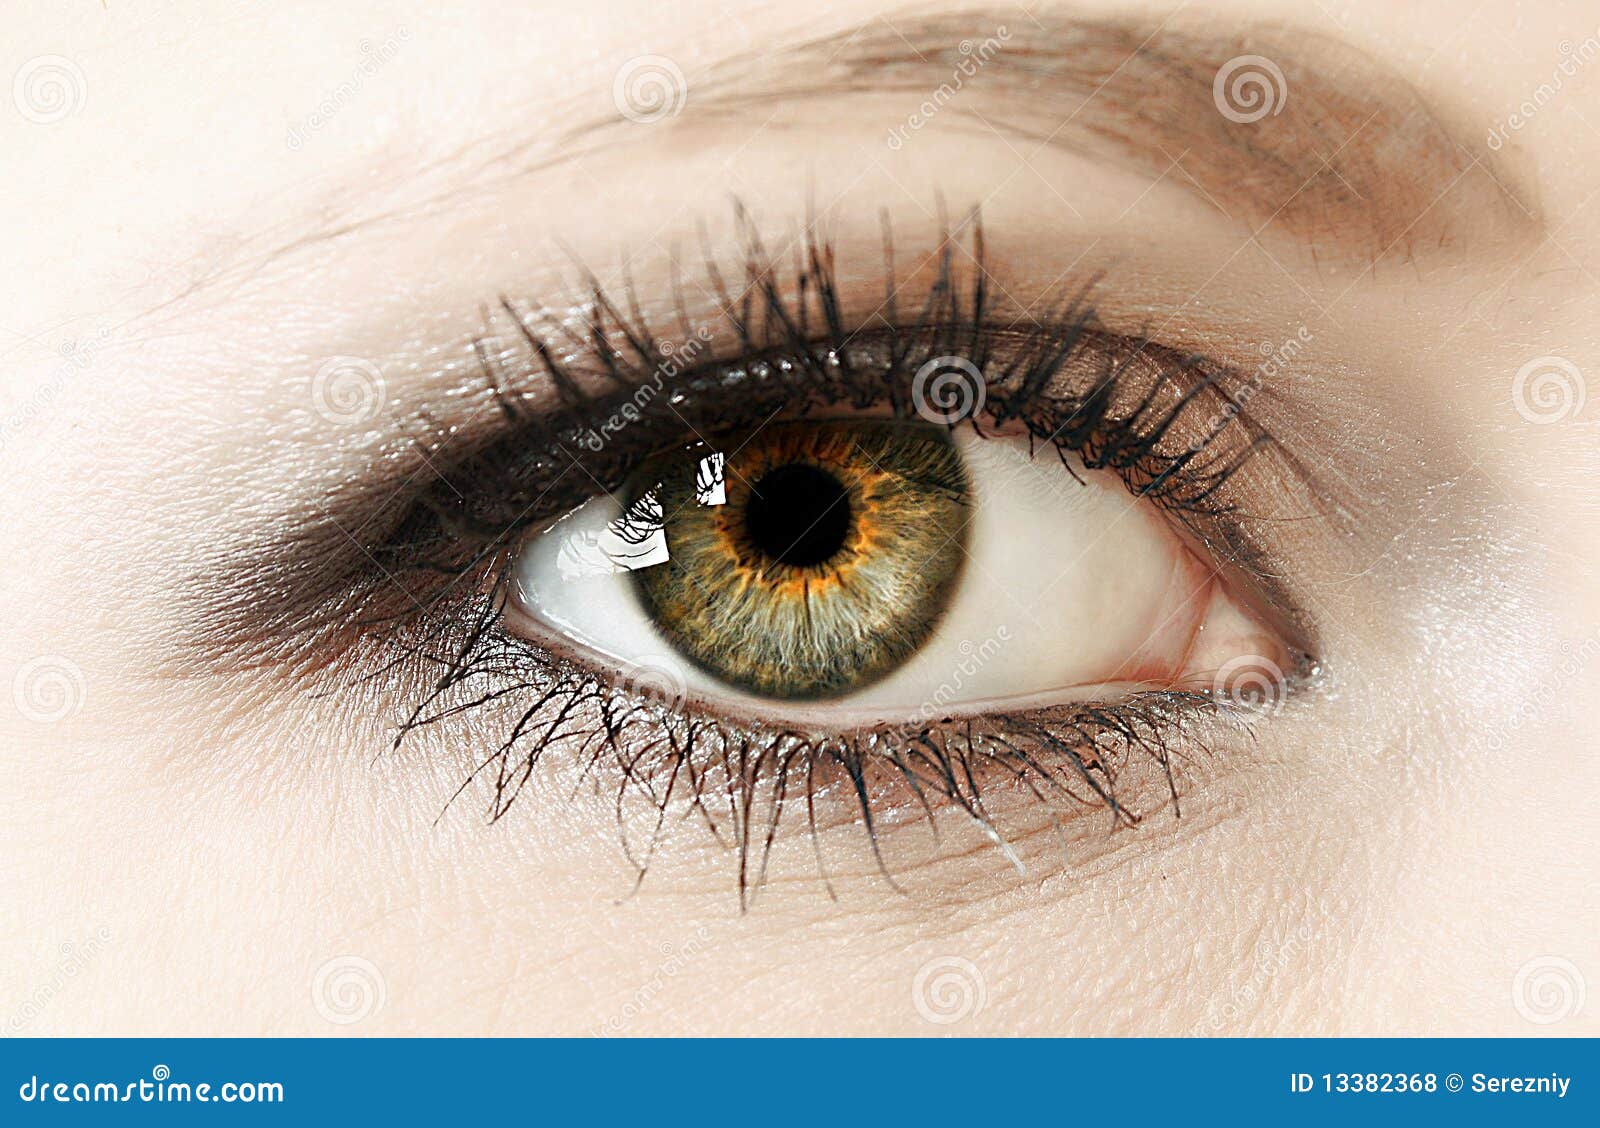 woman eye closeup